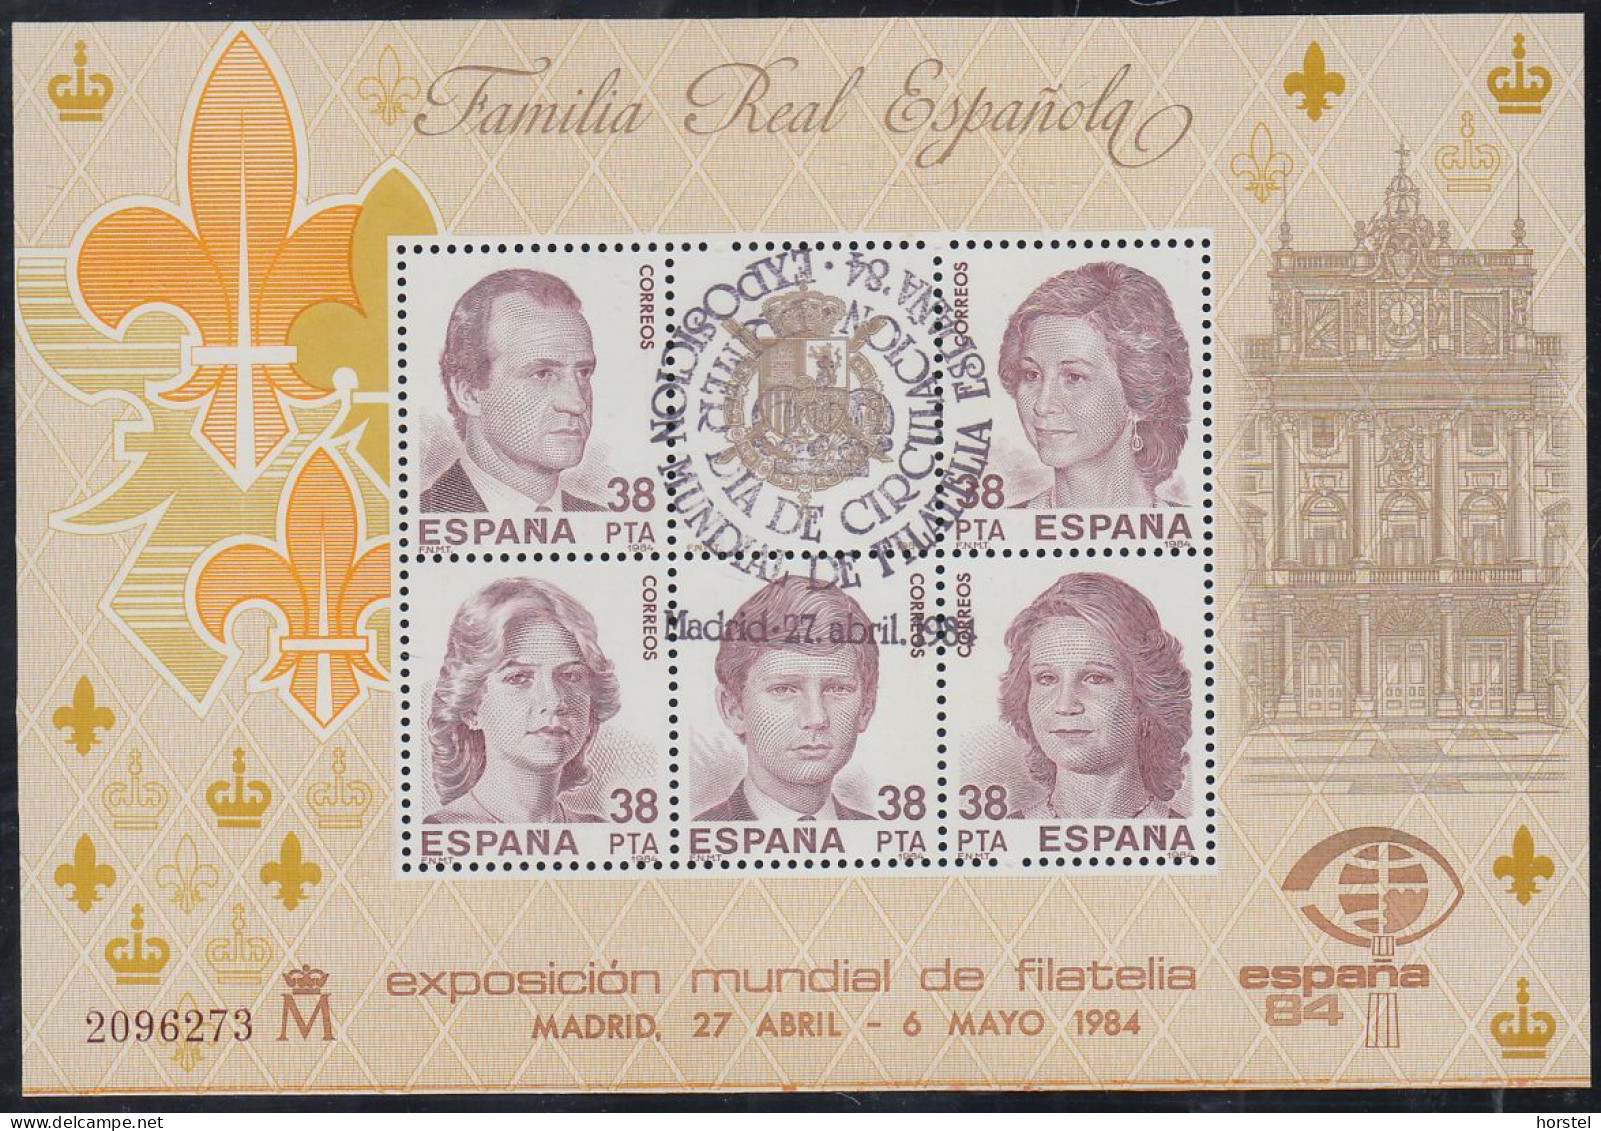 Spanien Block 27 - Internationale Briefmarkenausstellung ESPANA 1984, Madrid ( Sonderstempel 27.4.1984) - Blocks & Kleinbögen